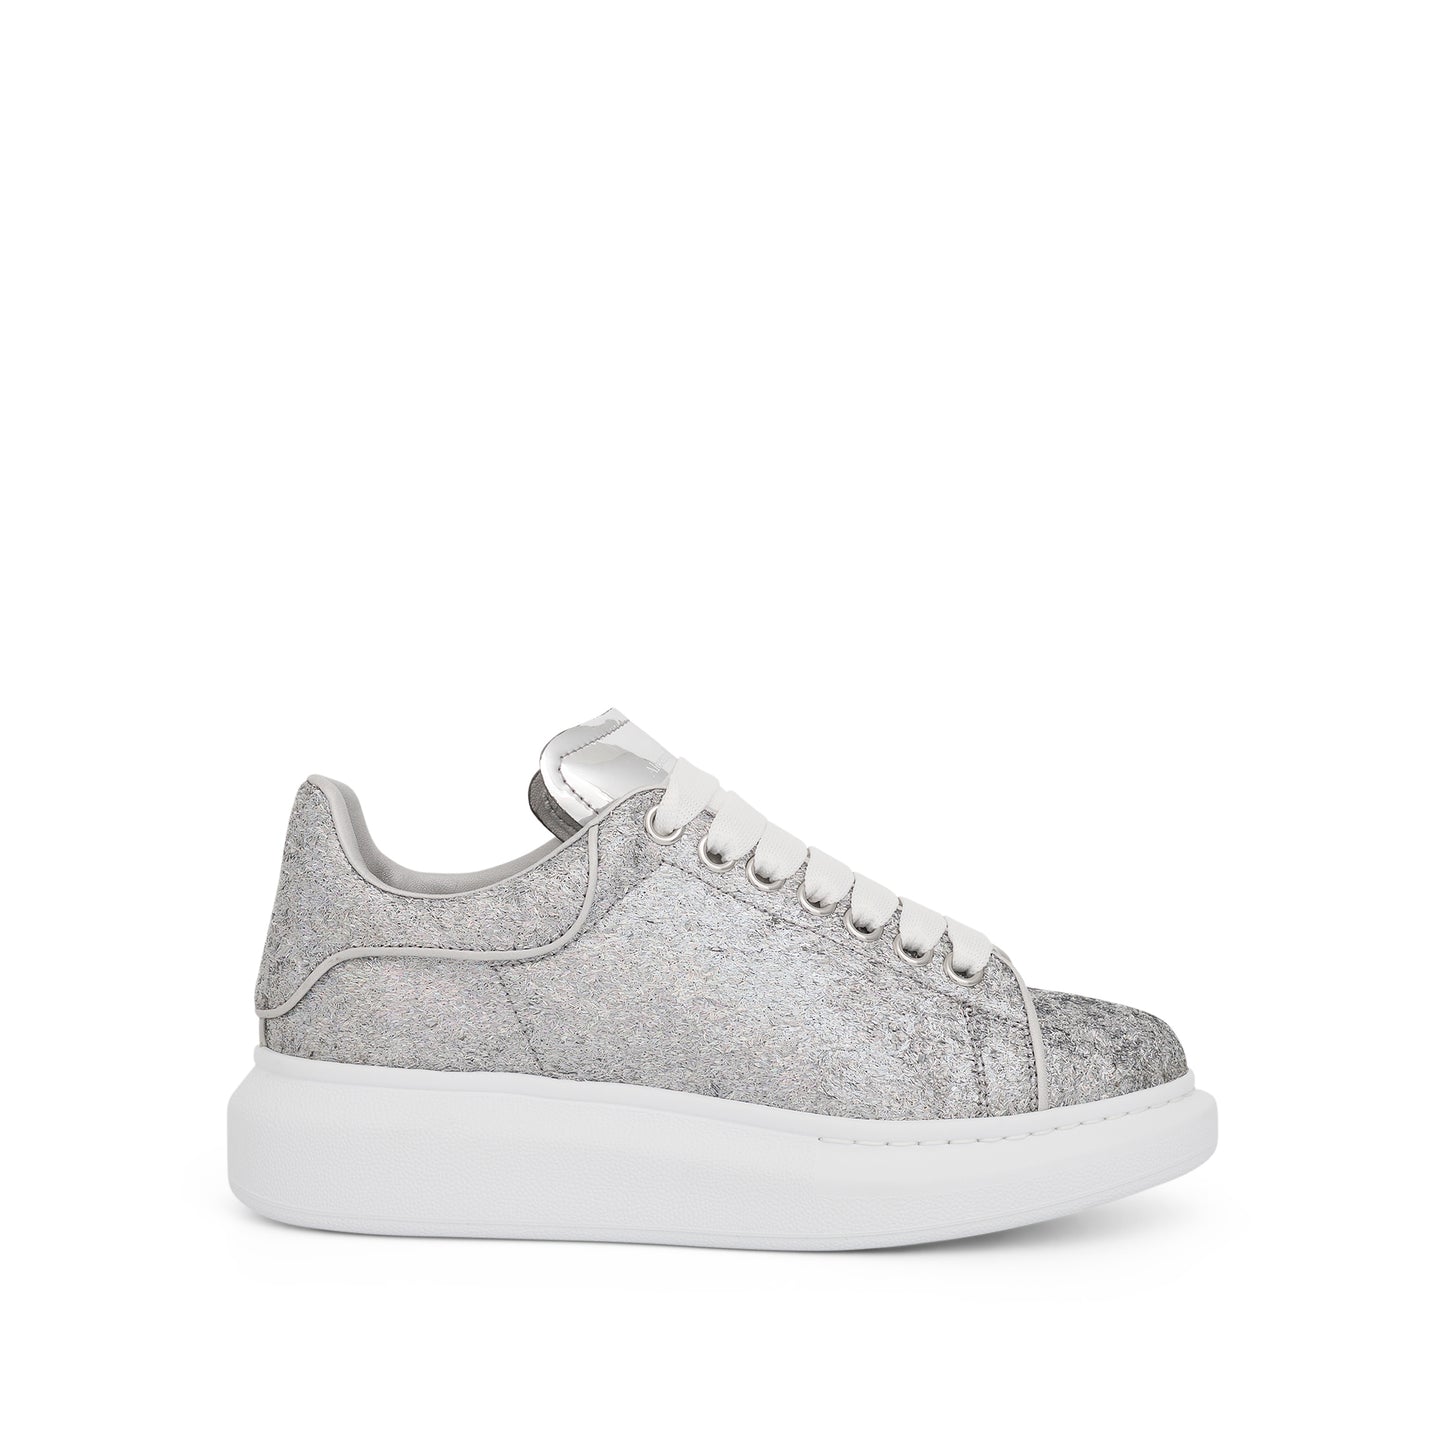 Larry Oversized Glitter Sneaker in Silver/Grey